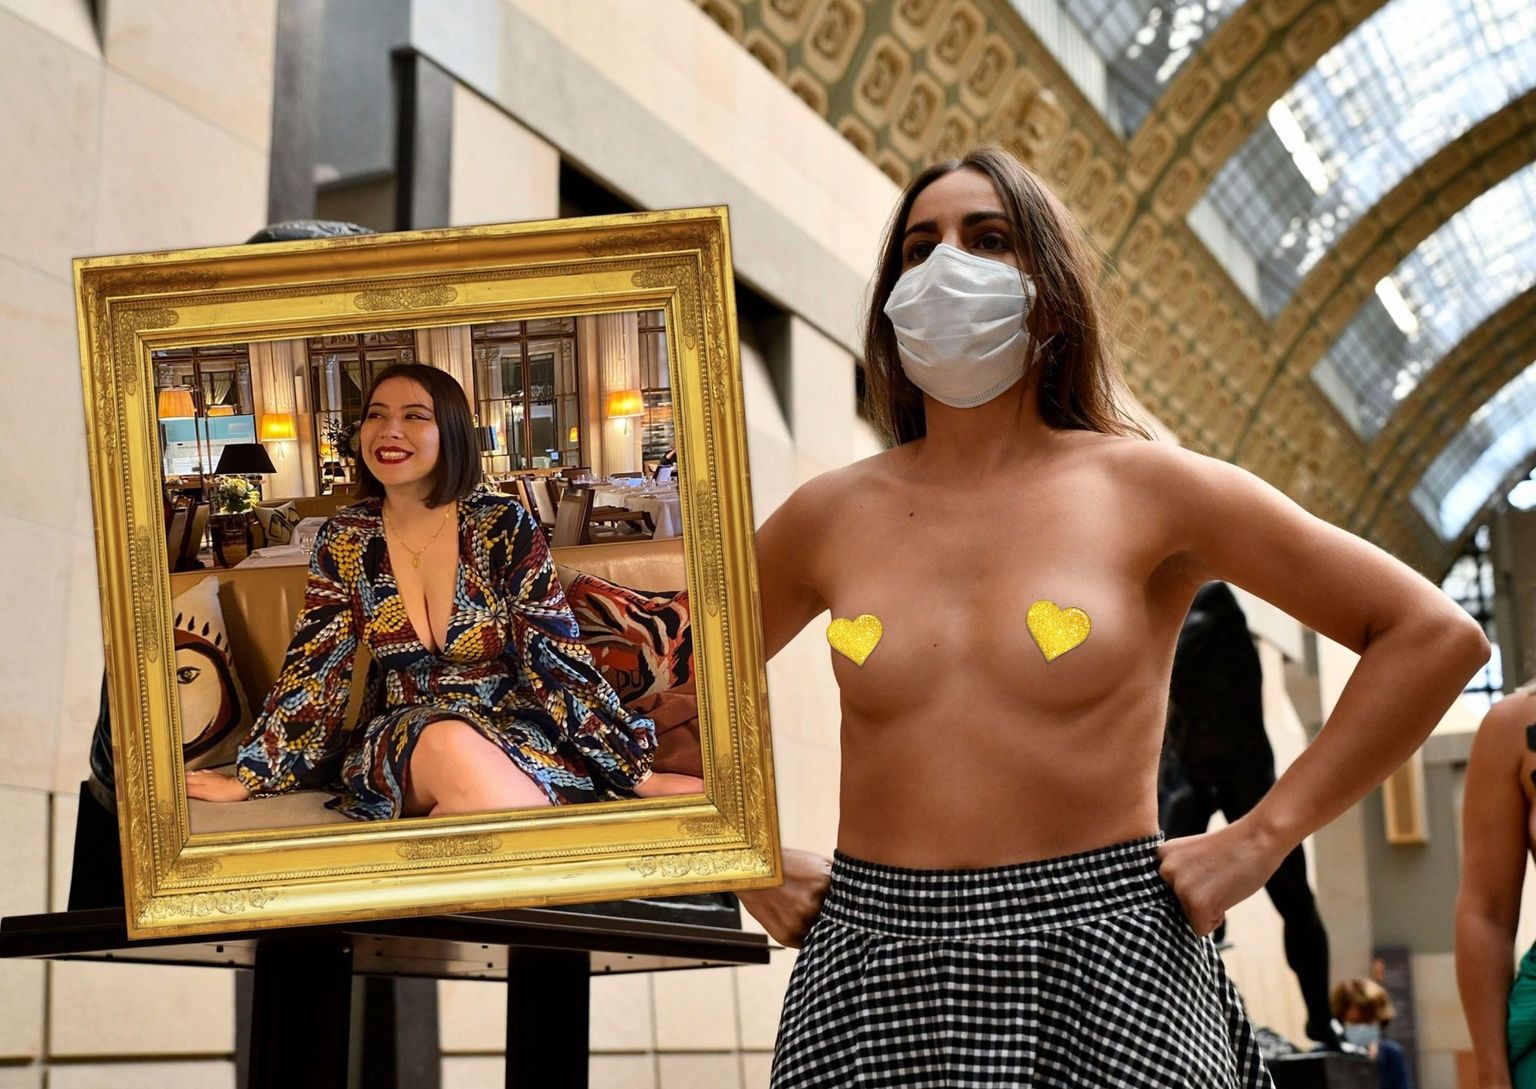 Femeni aktivistid tulid Orsay muuseumisse naiste seksualiseerimise vastu protestima.